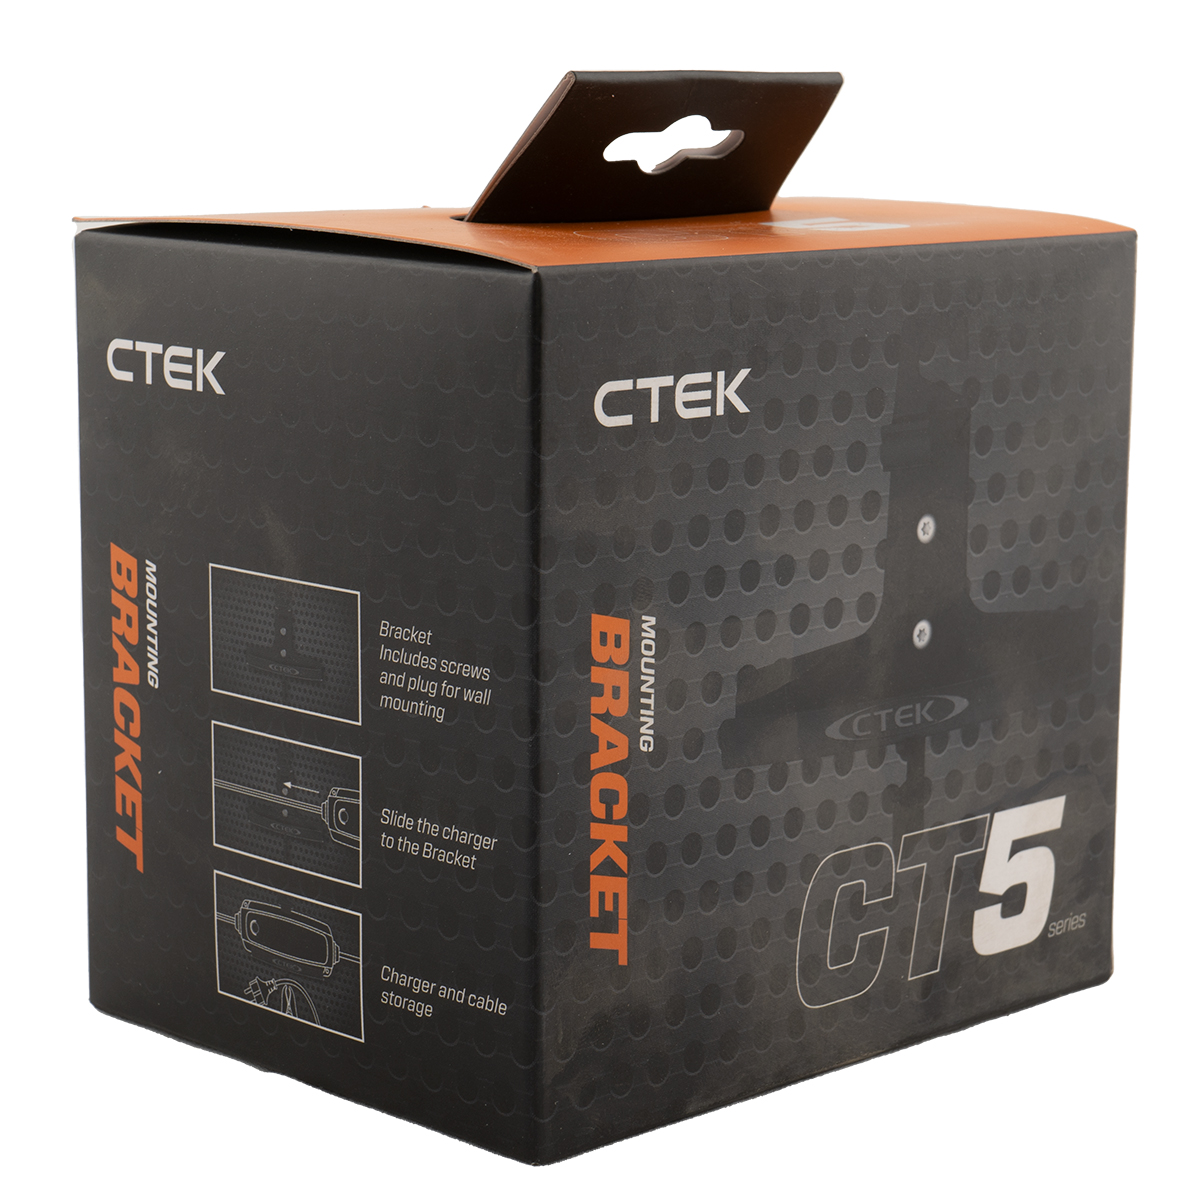 CTEK CT5 MOUNTING BRACKET Wandhalterung für CT5 Ladegeräte